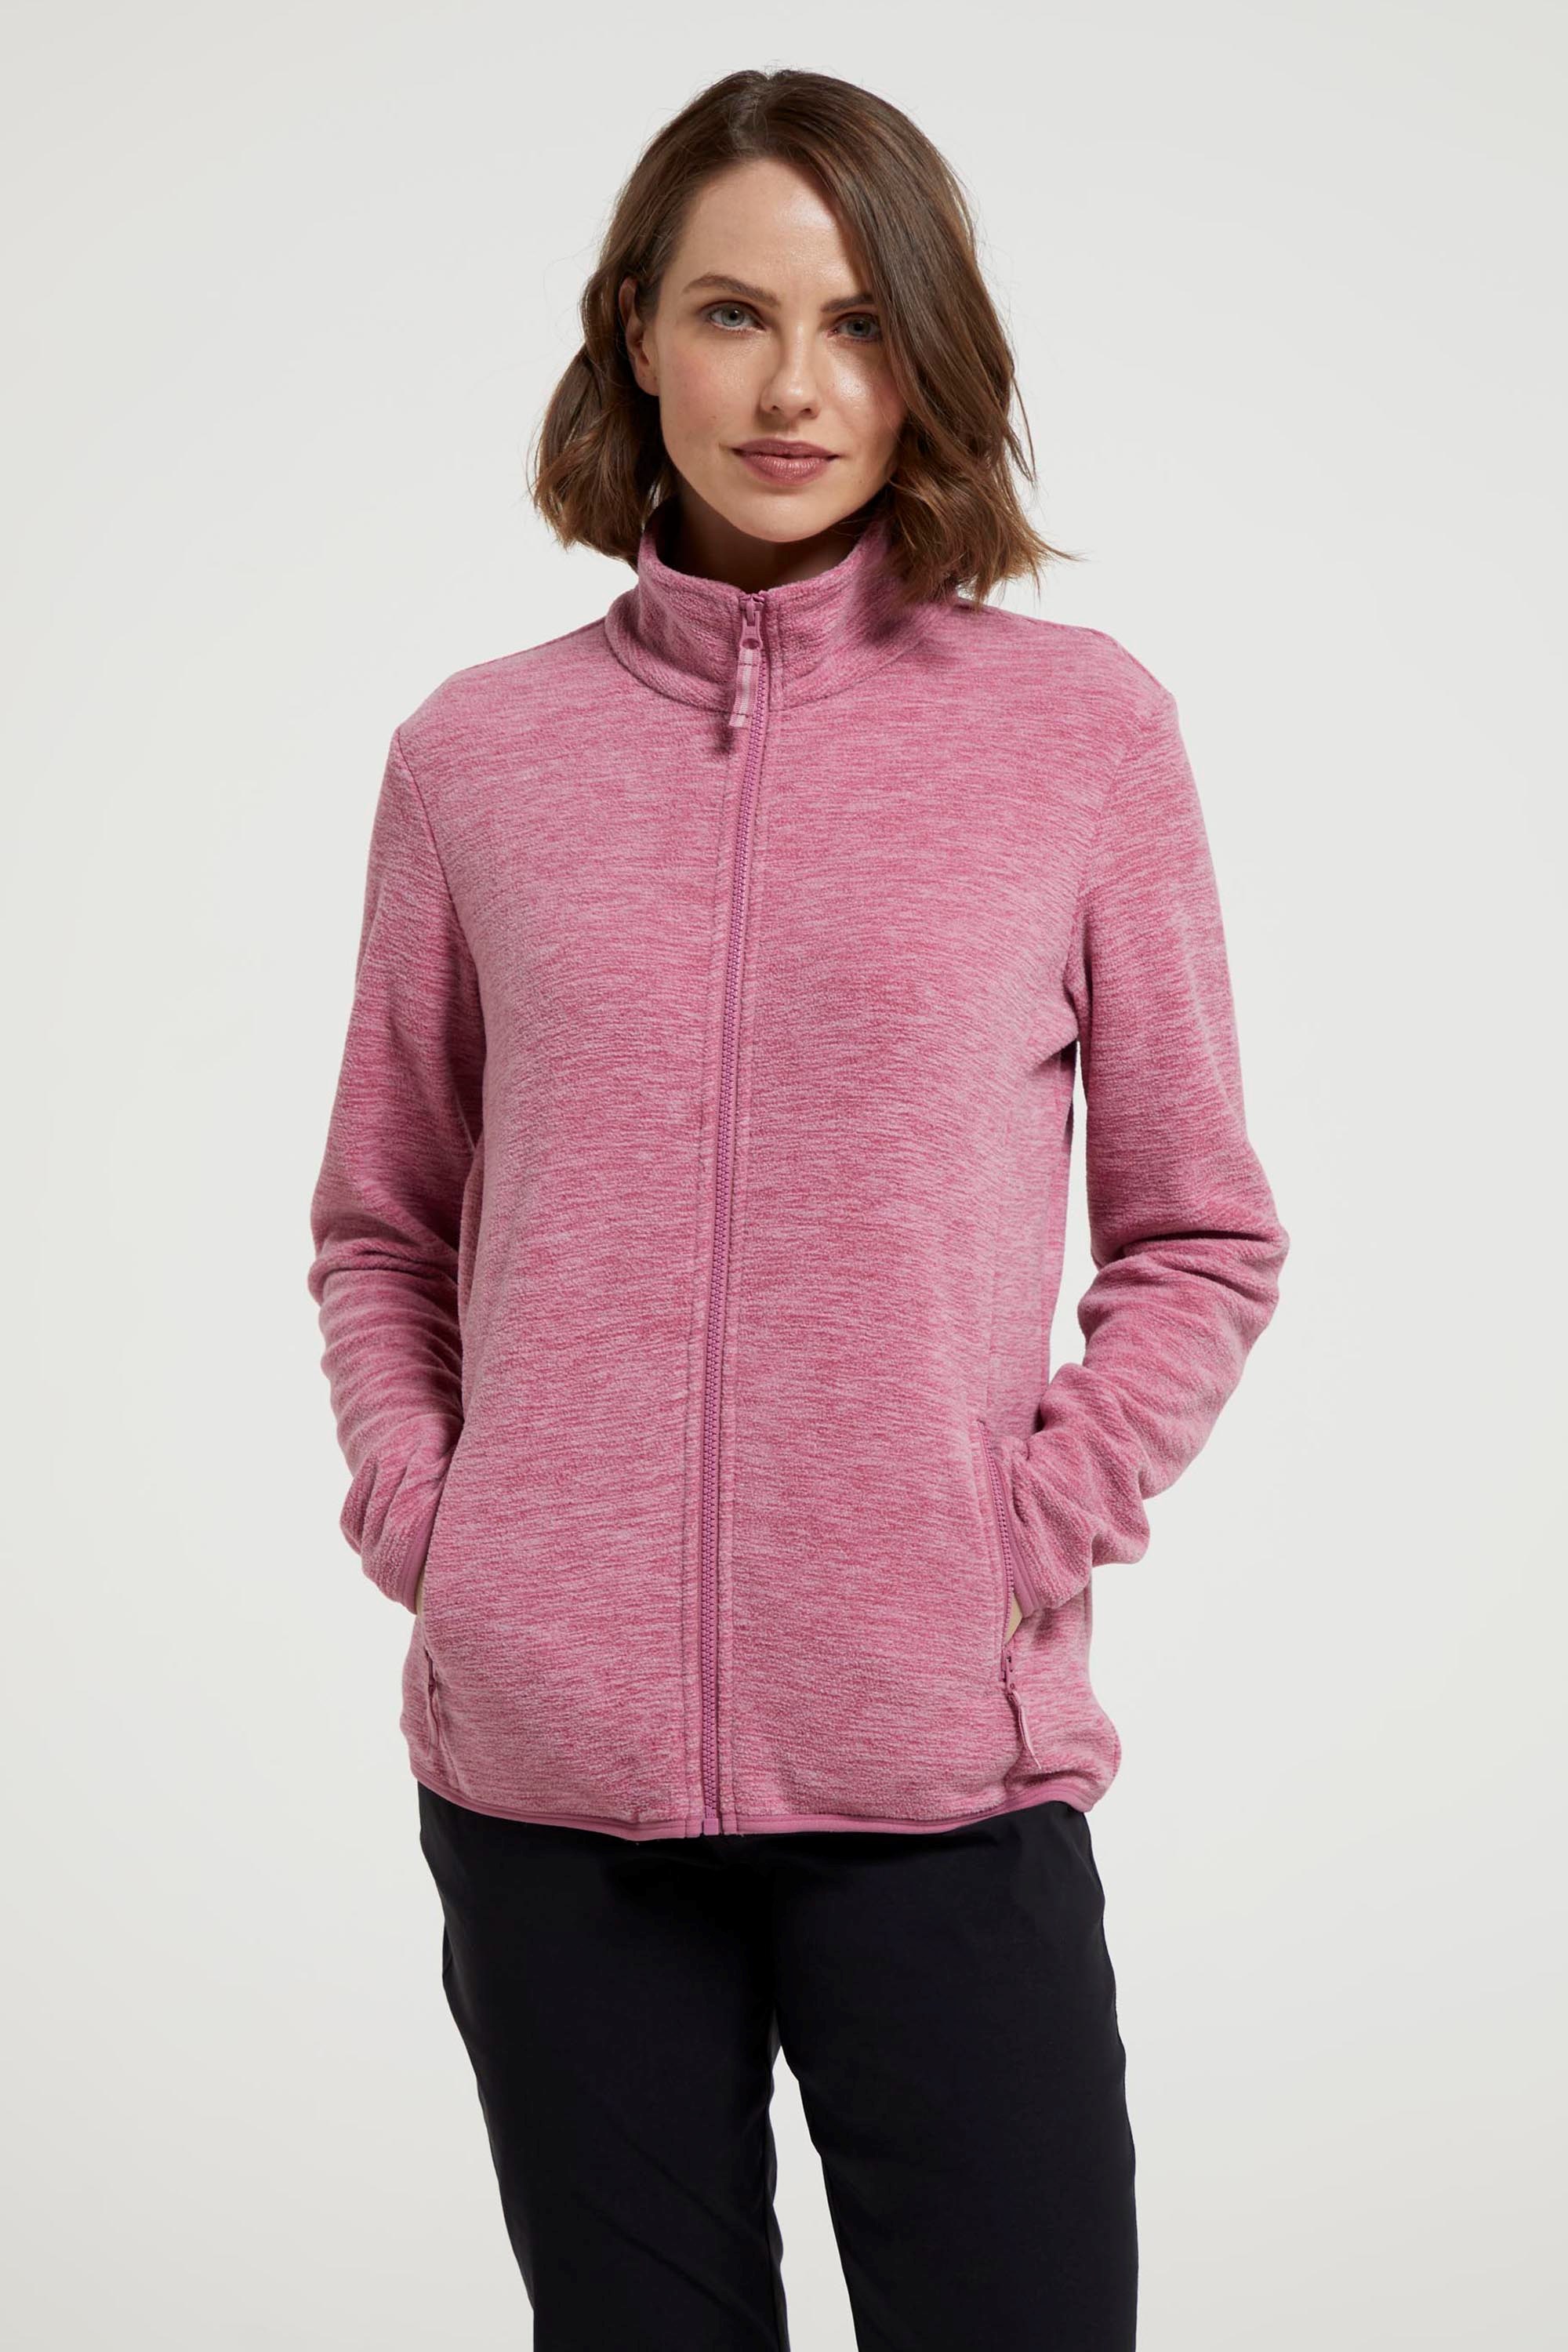 Women's Fleeces  Women's Fleece Jackets & Zip Ups